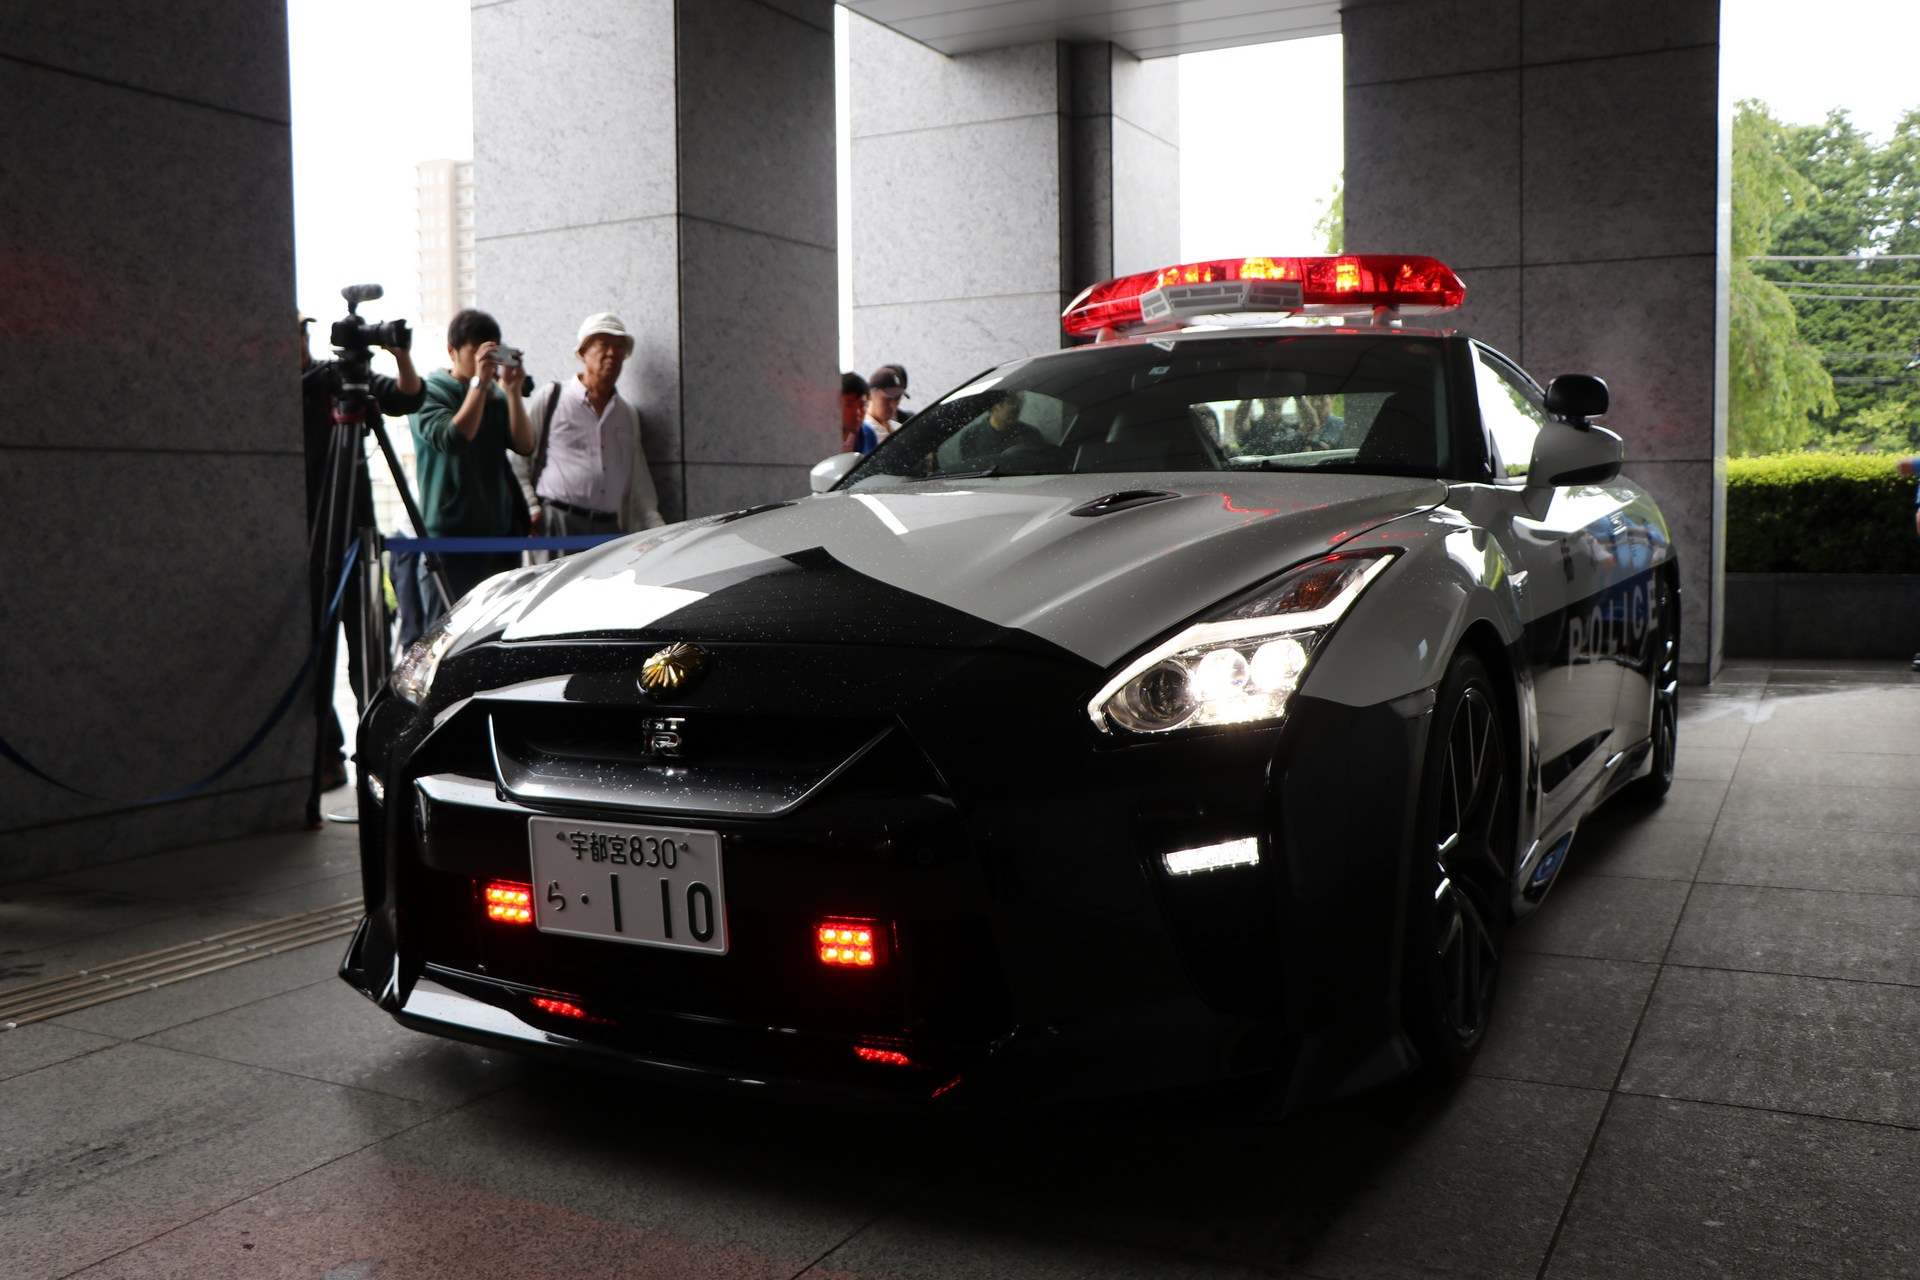 "بالصور" نيسان GT-R تدخل الخدمة رسميا بأسطول الشرطة اليابانية 42